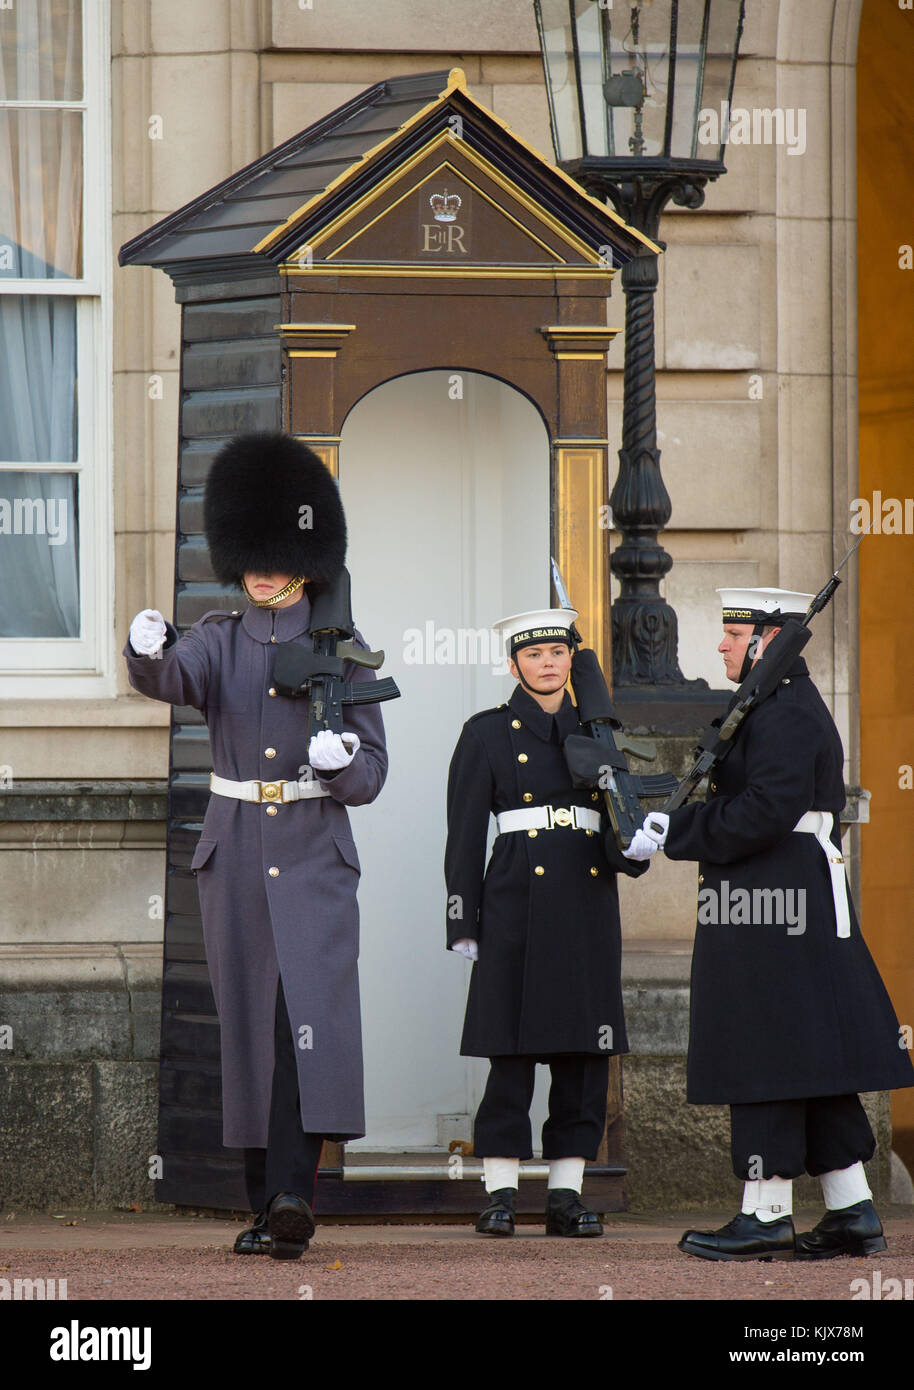 Le couturier Alex Stacey (au centre) prend sa position dans une boîte de sentry, alors que des marins de la Royal Navy exécutent la cérémonie de la relève de la garde à Buckingham Palace, Londres, pour la première fois dans ses 357 ans d'histoire. Banque D'Images